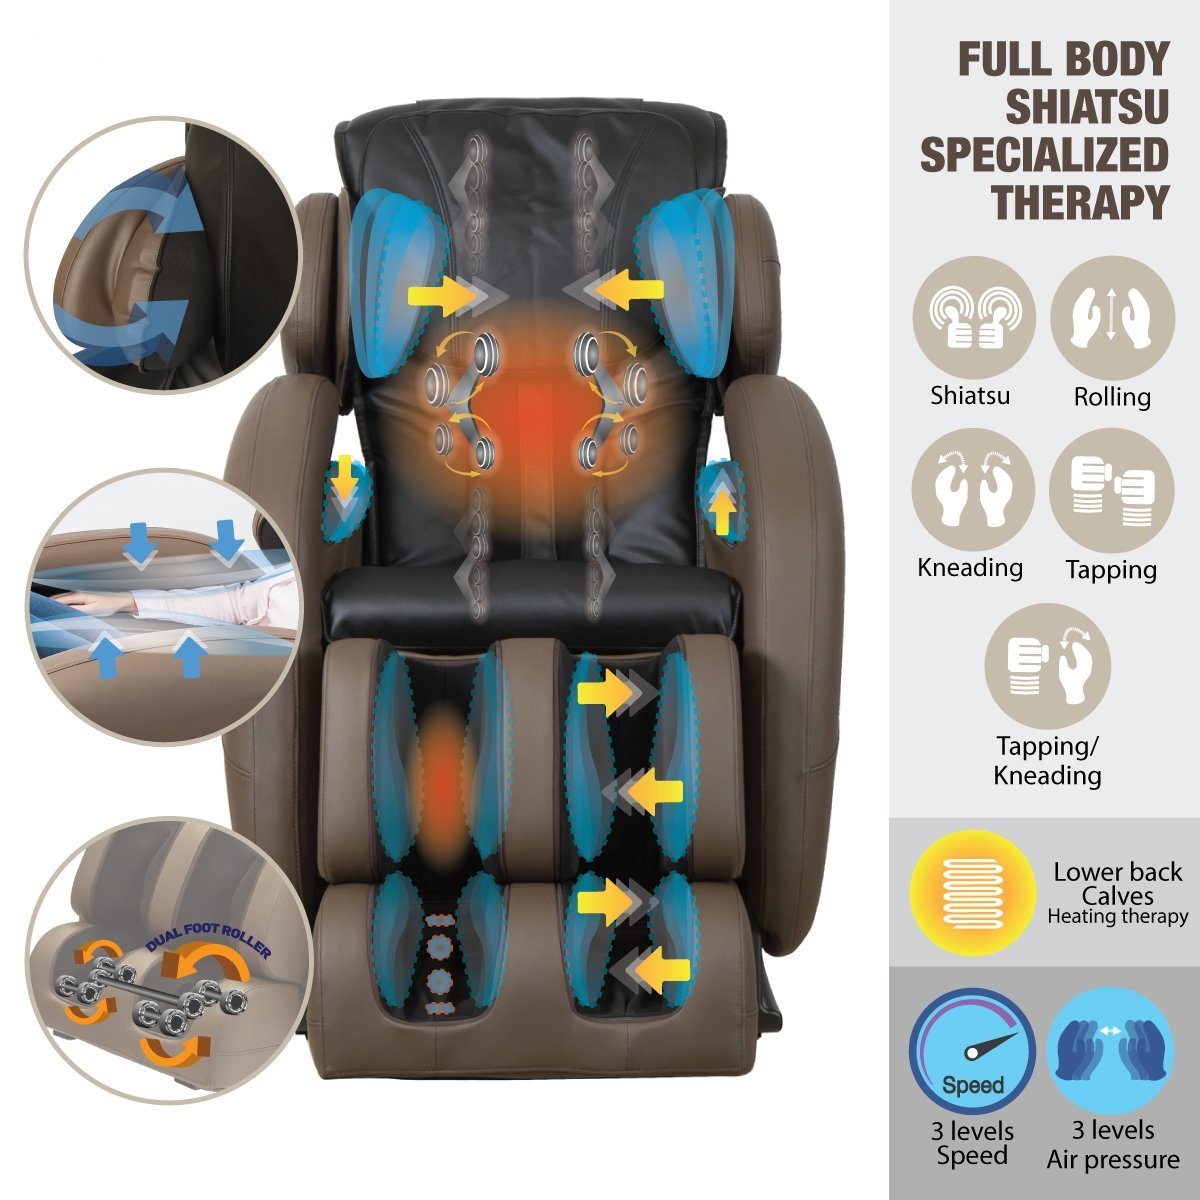 Chia sẻ kinh nghiệm mua ghế massage toàn thân giá tốt